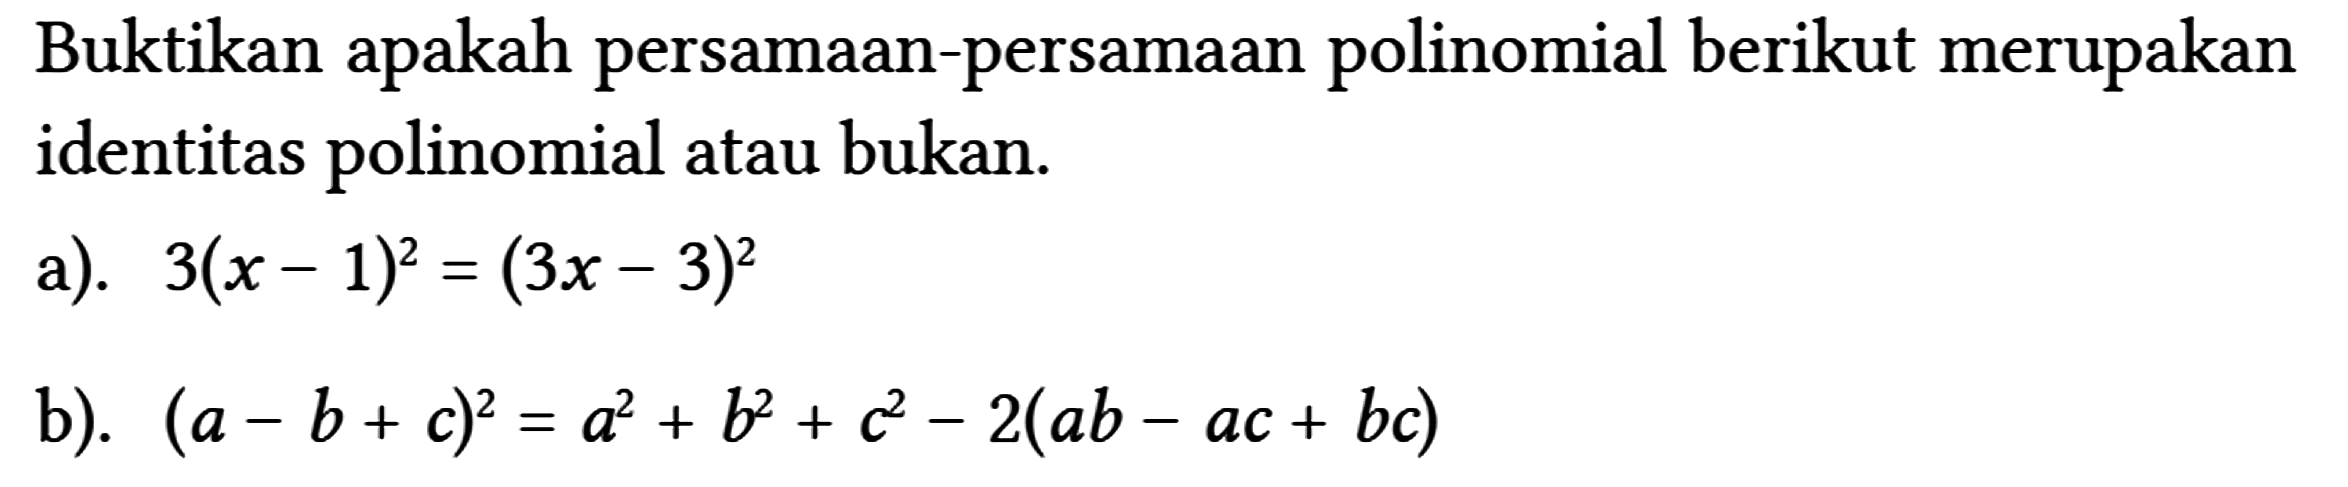 Buktikan apakah persamaan-persamaan polinomial berikut merupakan identitas polinomial atau bukan.
 a). 3(x-1)^(2)=(3 x-3)^(2) 
 b). (a-b+c)^(2)=a^(2)+b^(2)+c^(2)-2(a b-a c+b c)